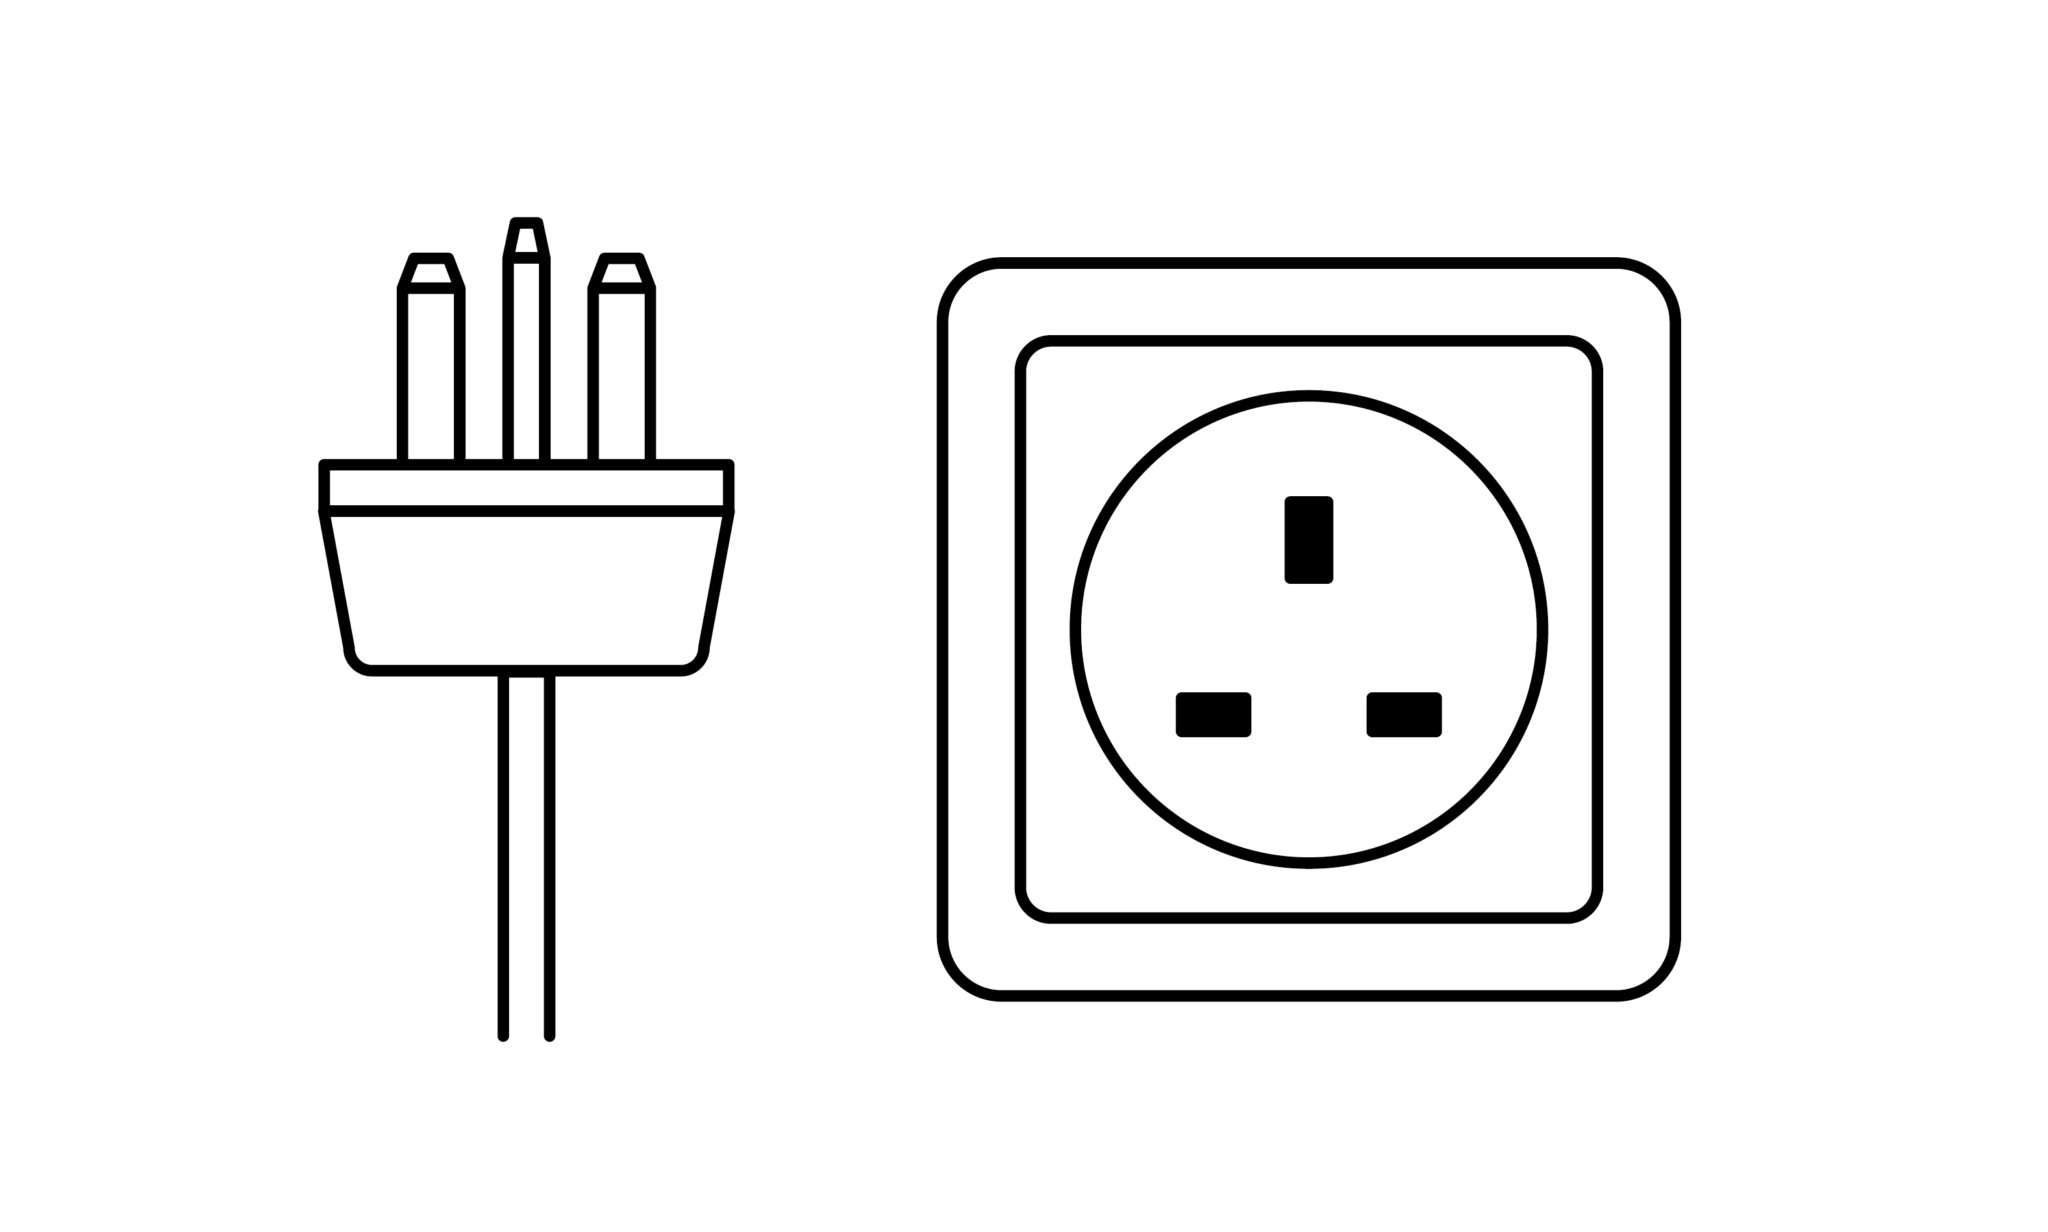 Electric Plug Type G Zeichenfläche 1